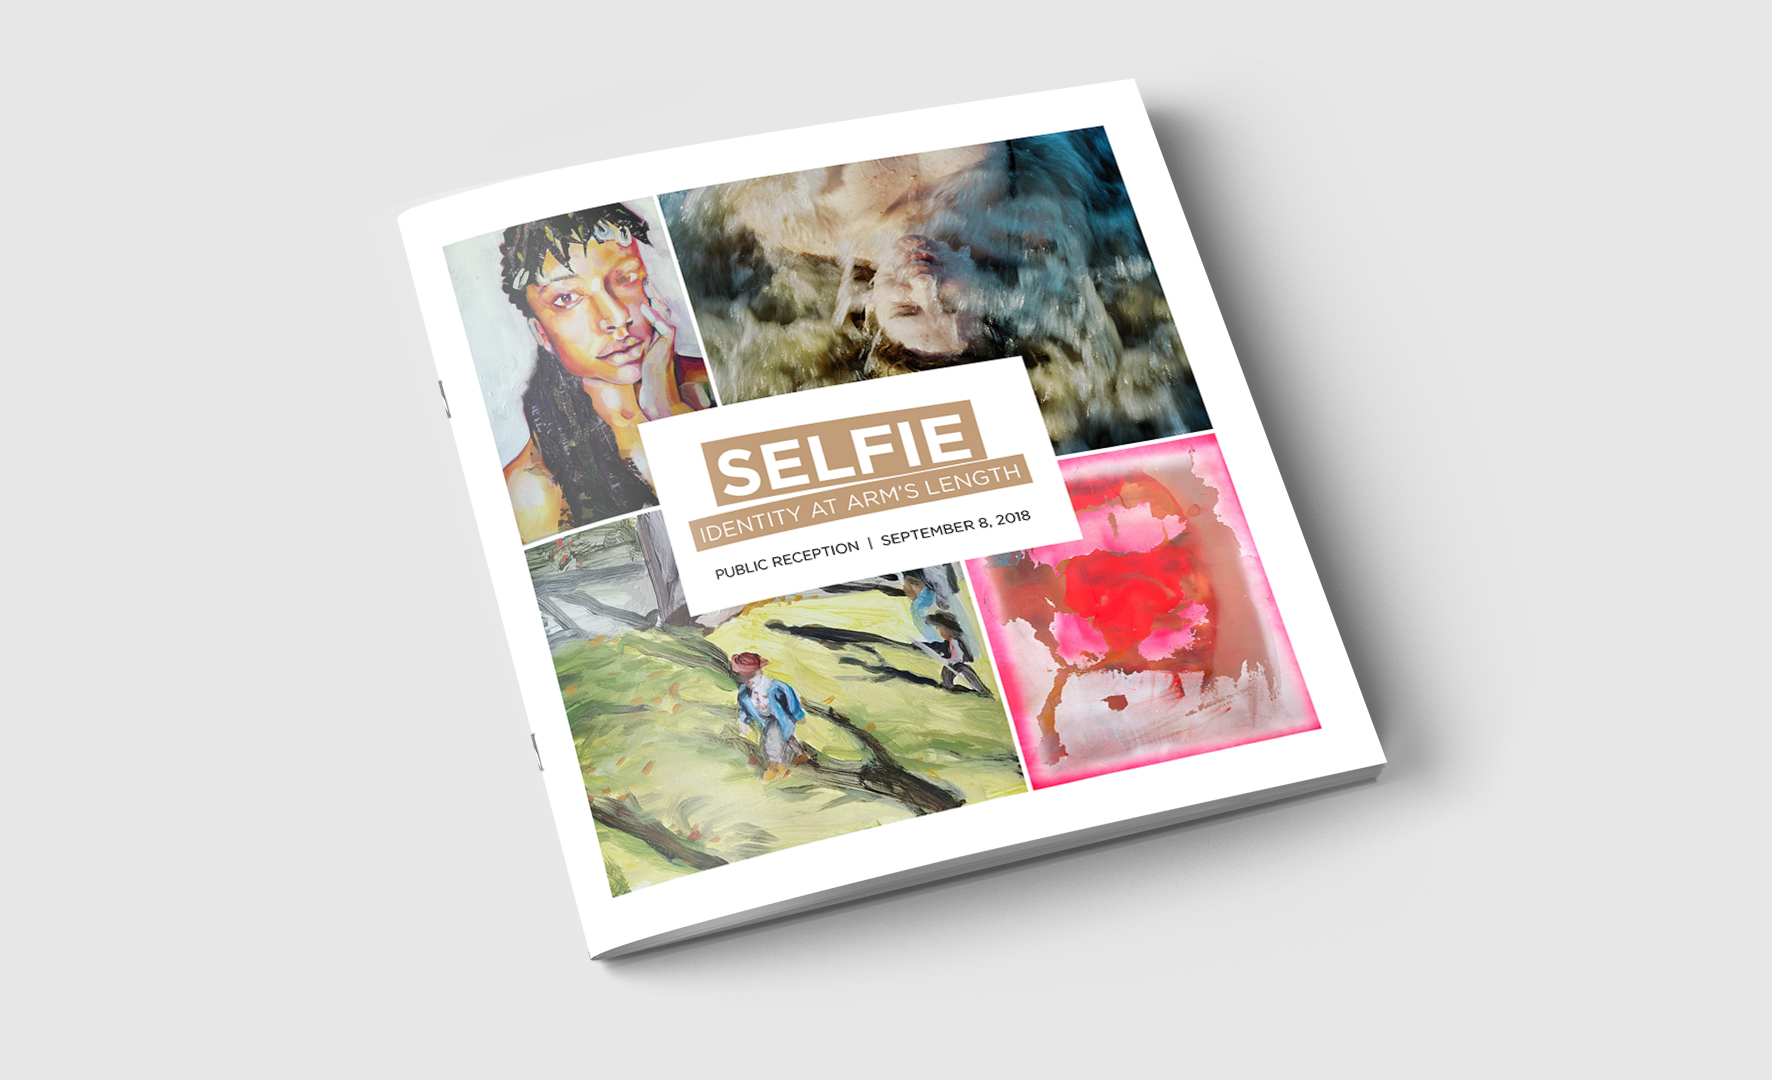 “Selfie” Art Gallery Guide